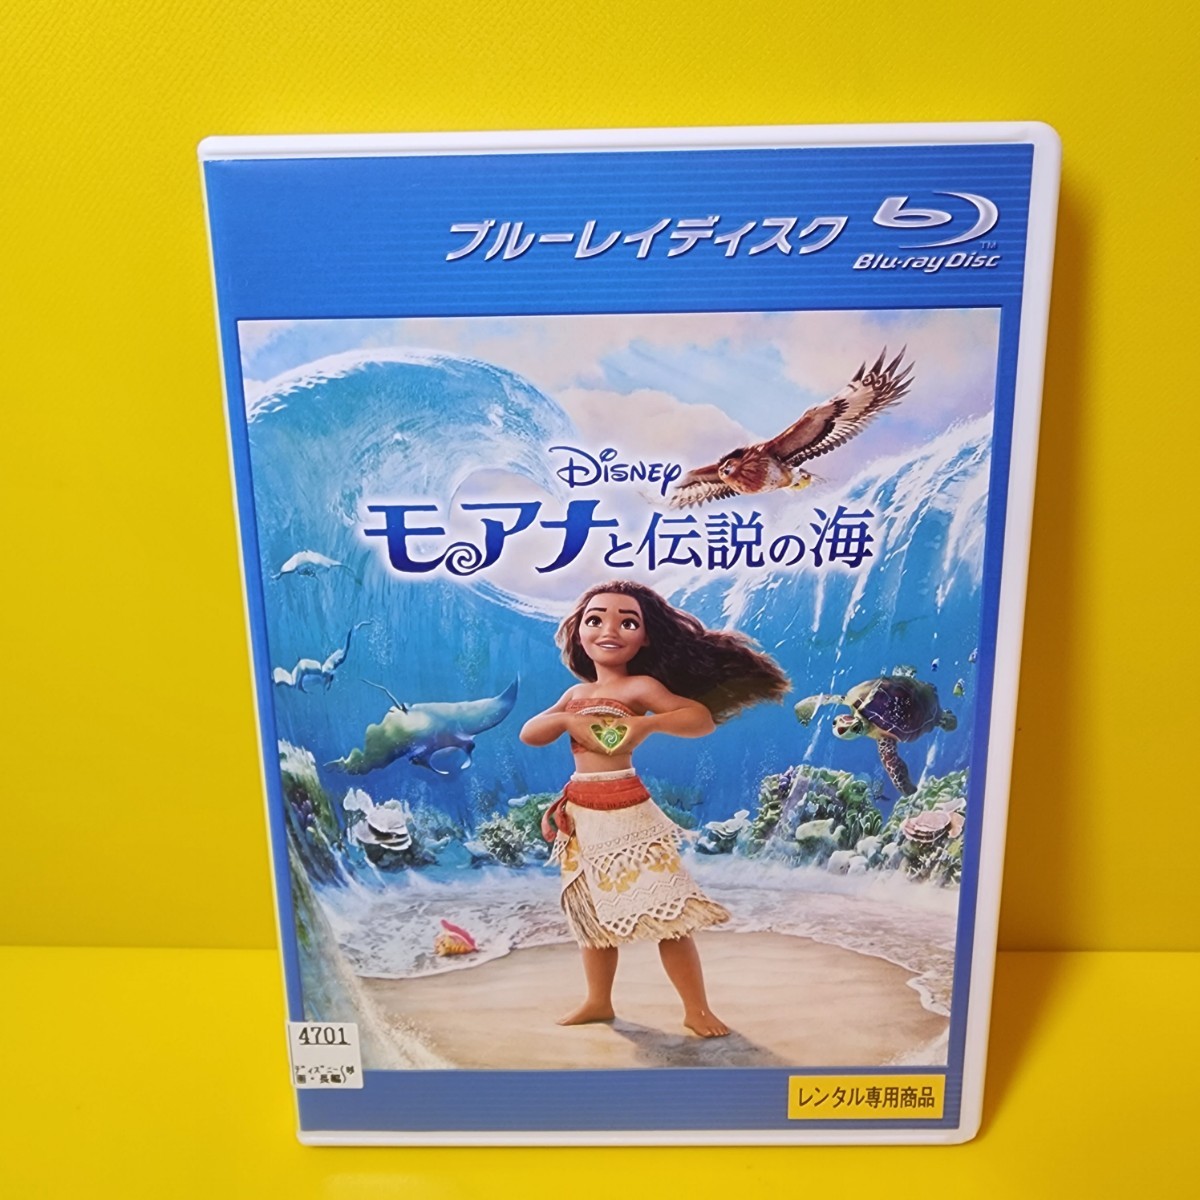 新品ケース交換済み「モアナと伝説の海 MovieNEX('16米)」ブルーレイ